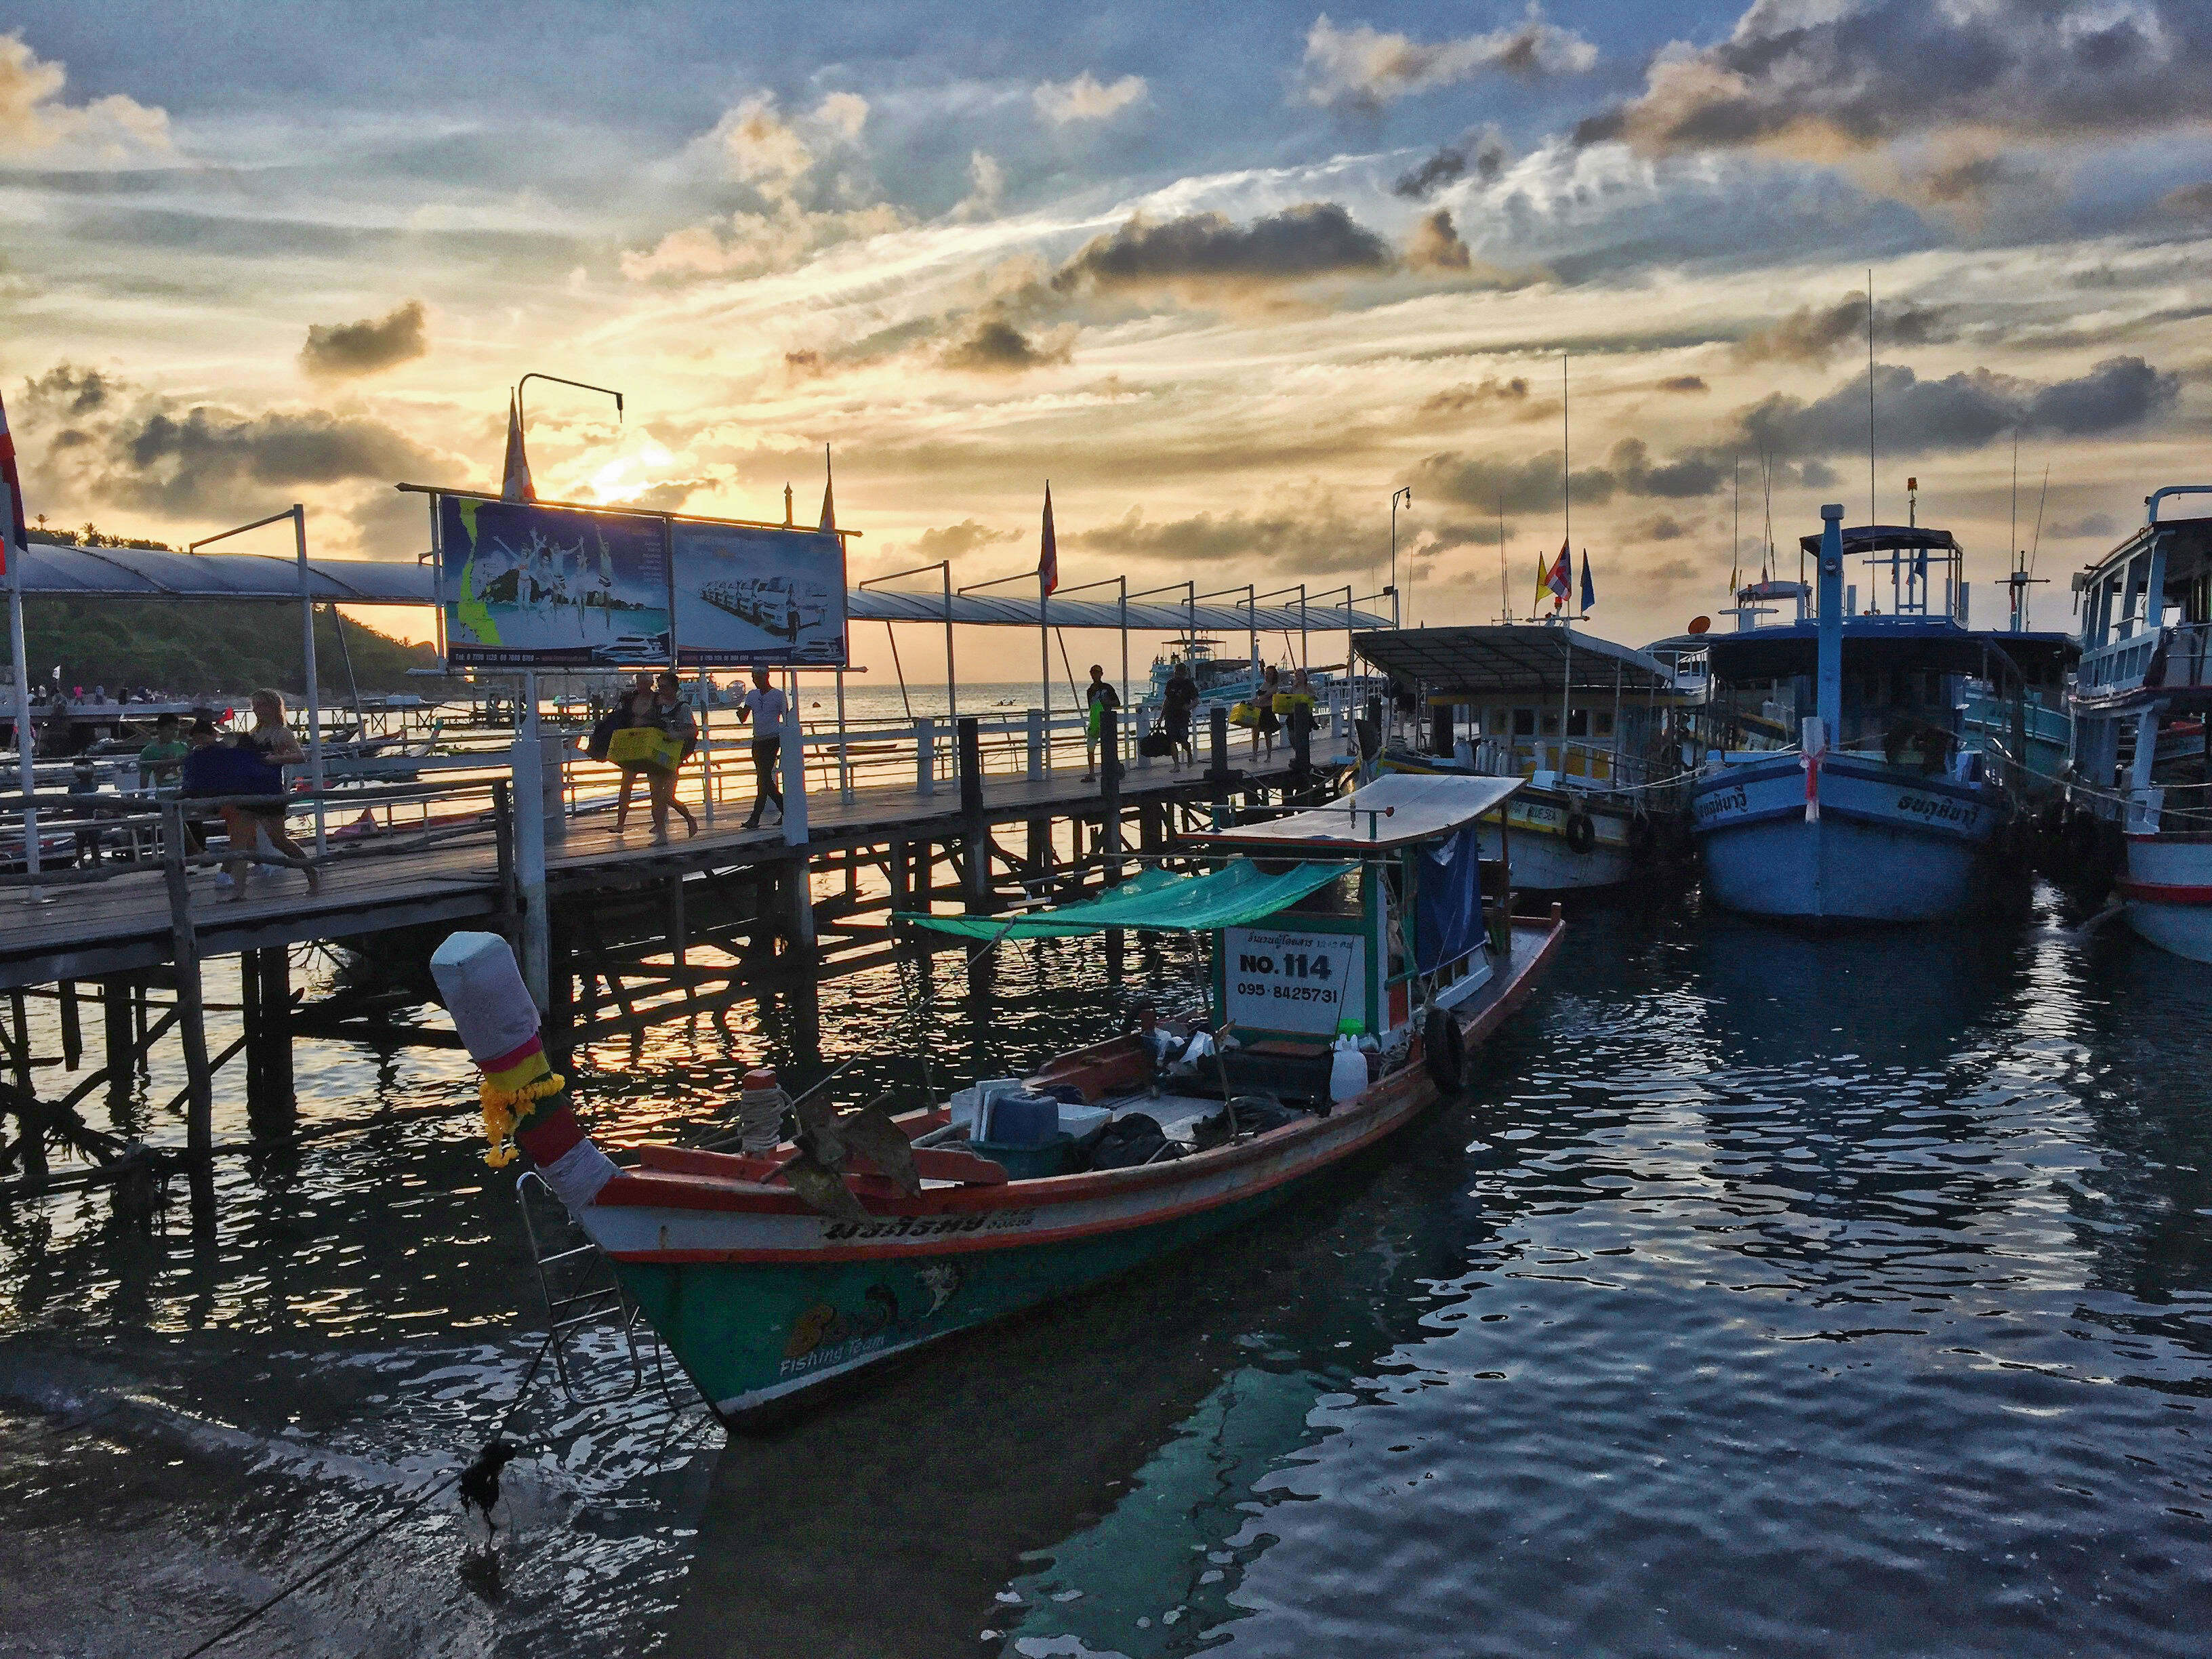 Ko Samui - Ko Phangan ferry pier